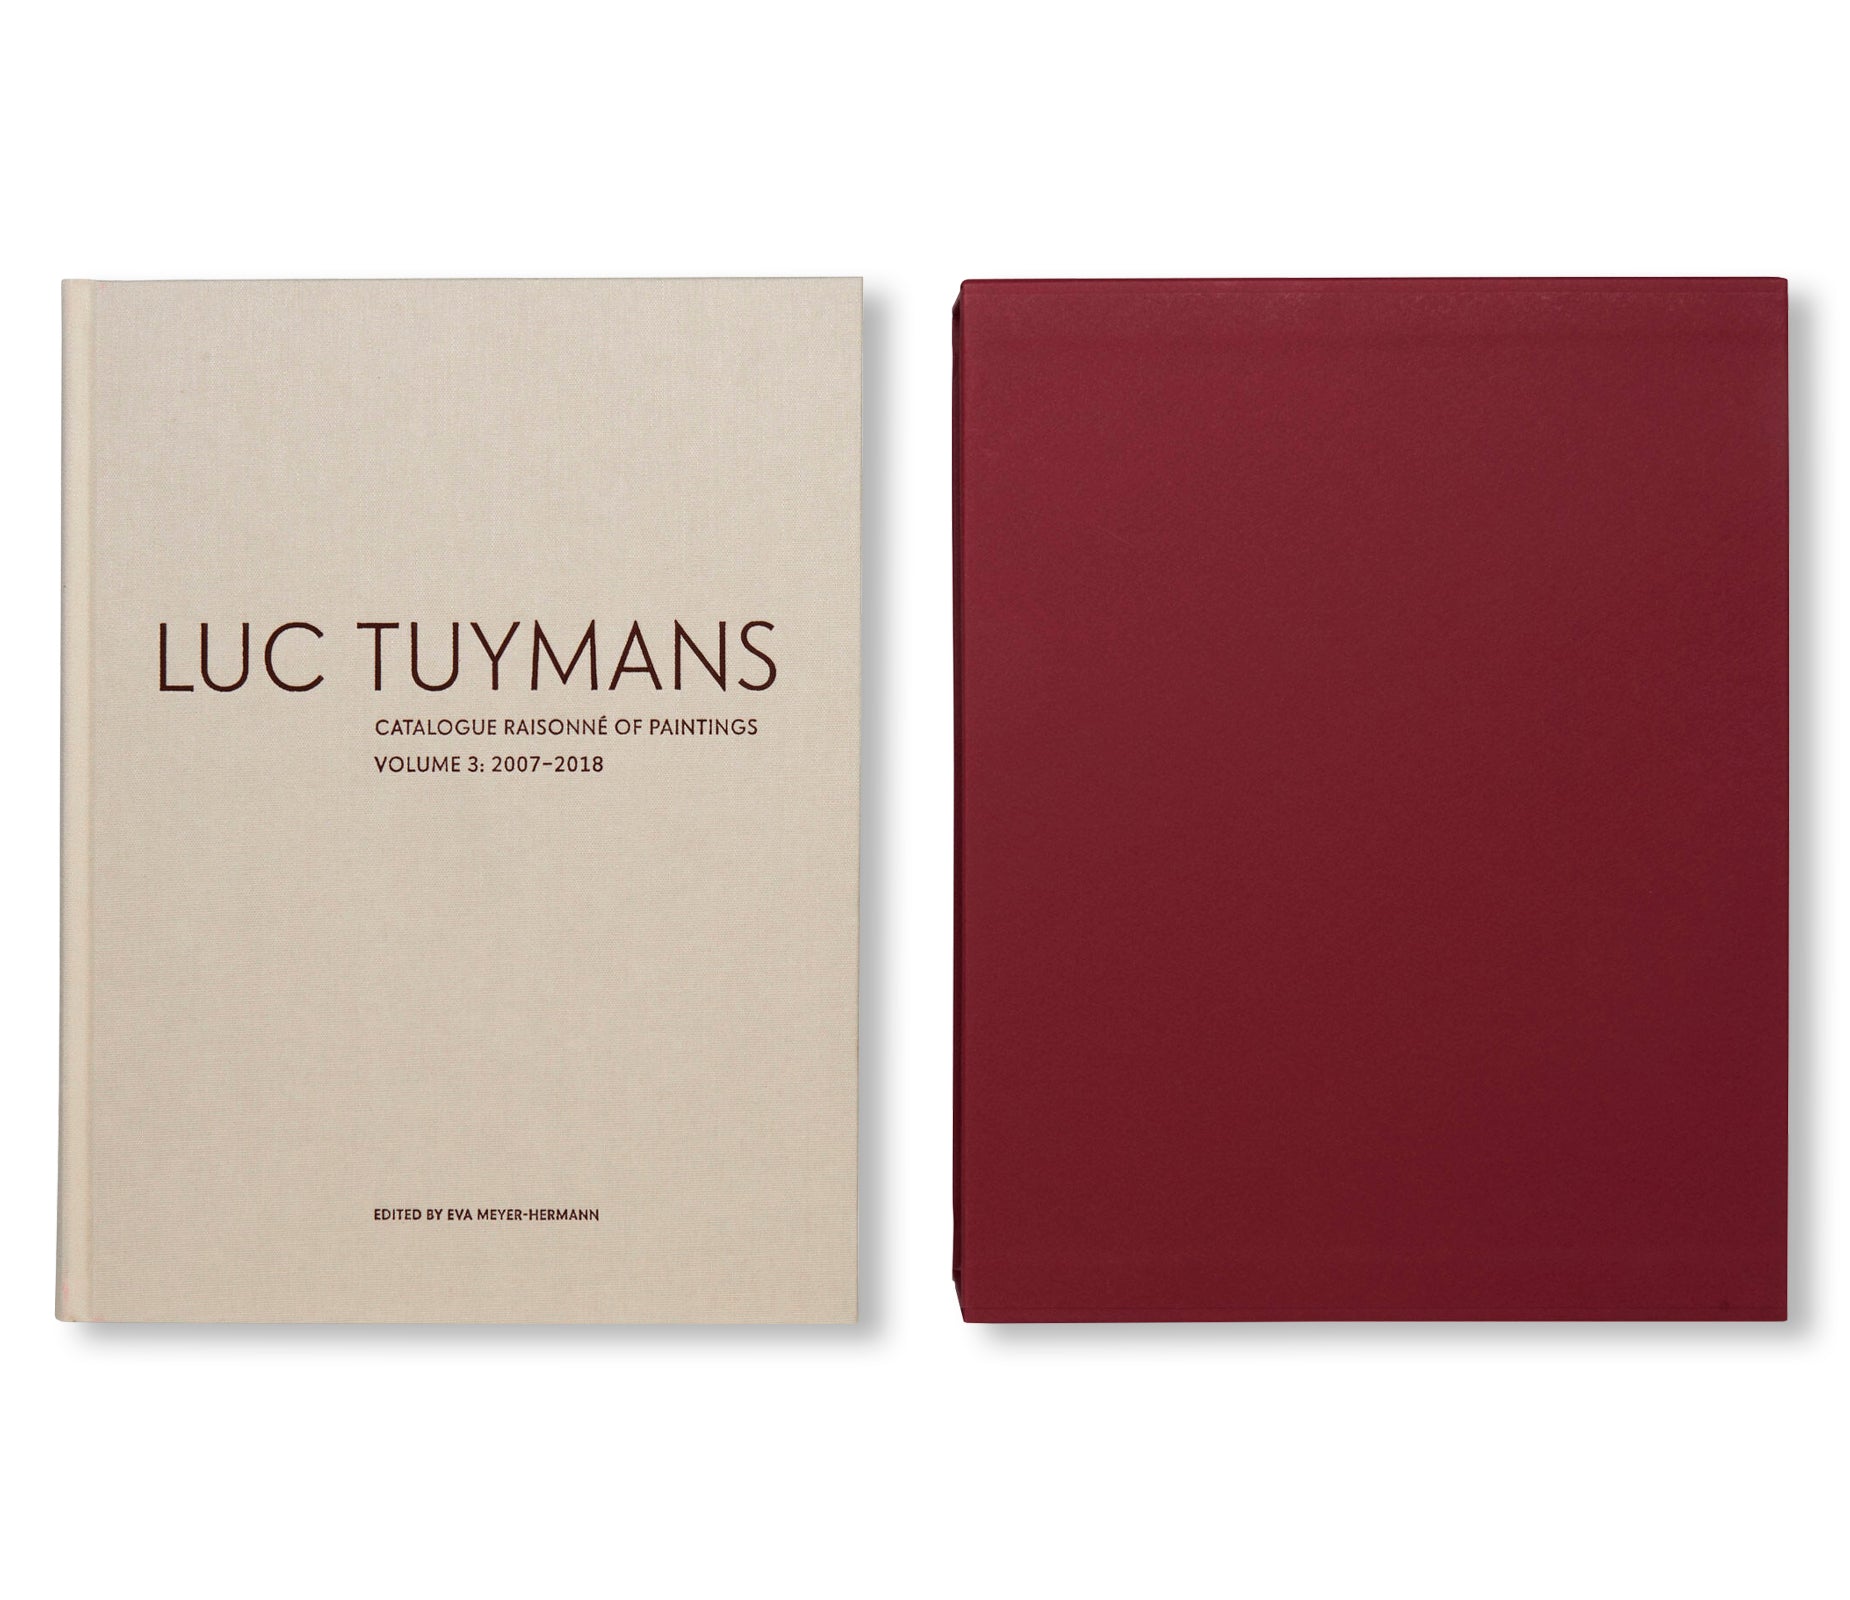 LUC TUYMANS: CATALOGUE RAISONNÉ OF PAINTINGS VOLUME 3, 2007–2018 by Luc Tuymans